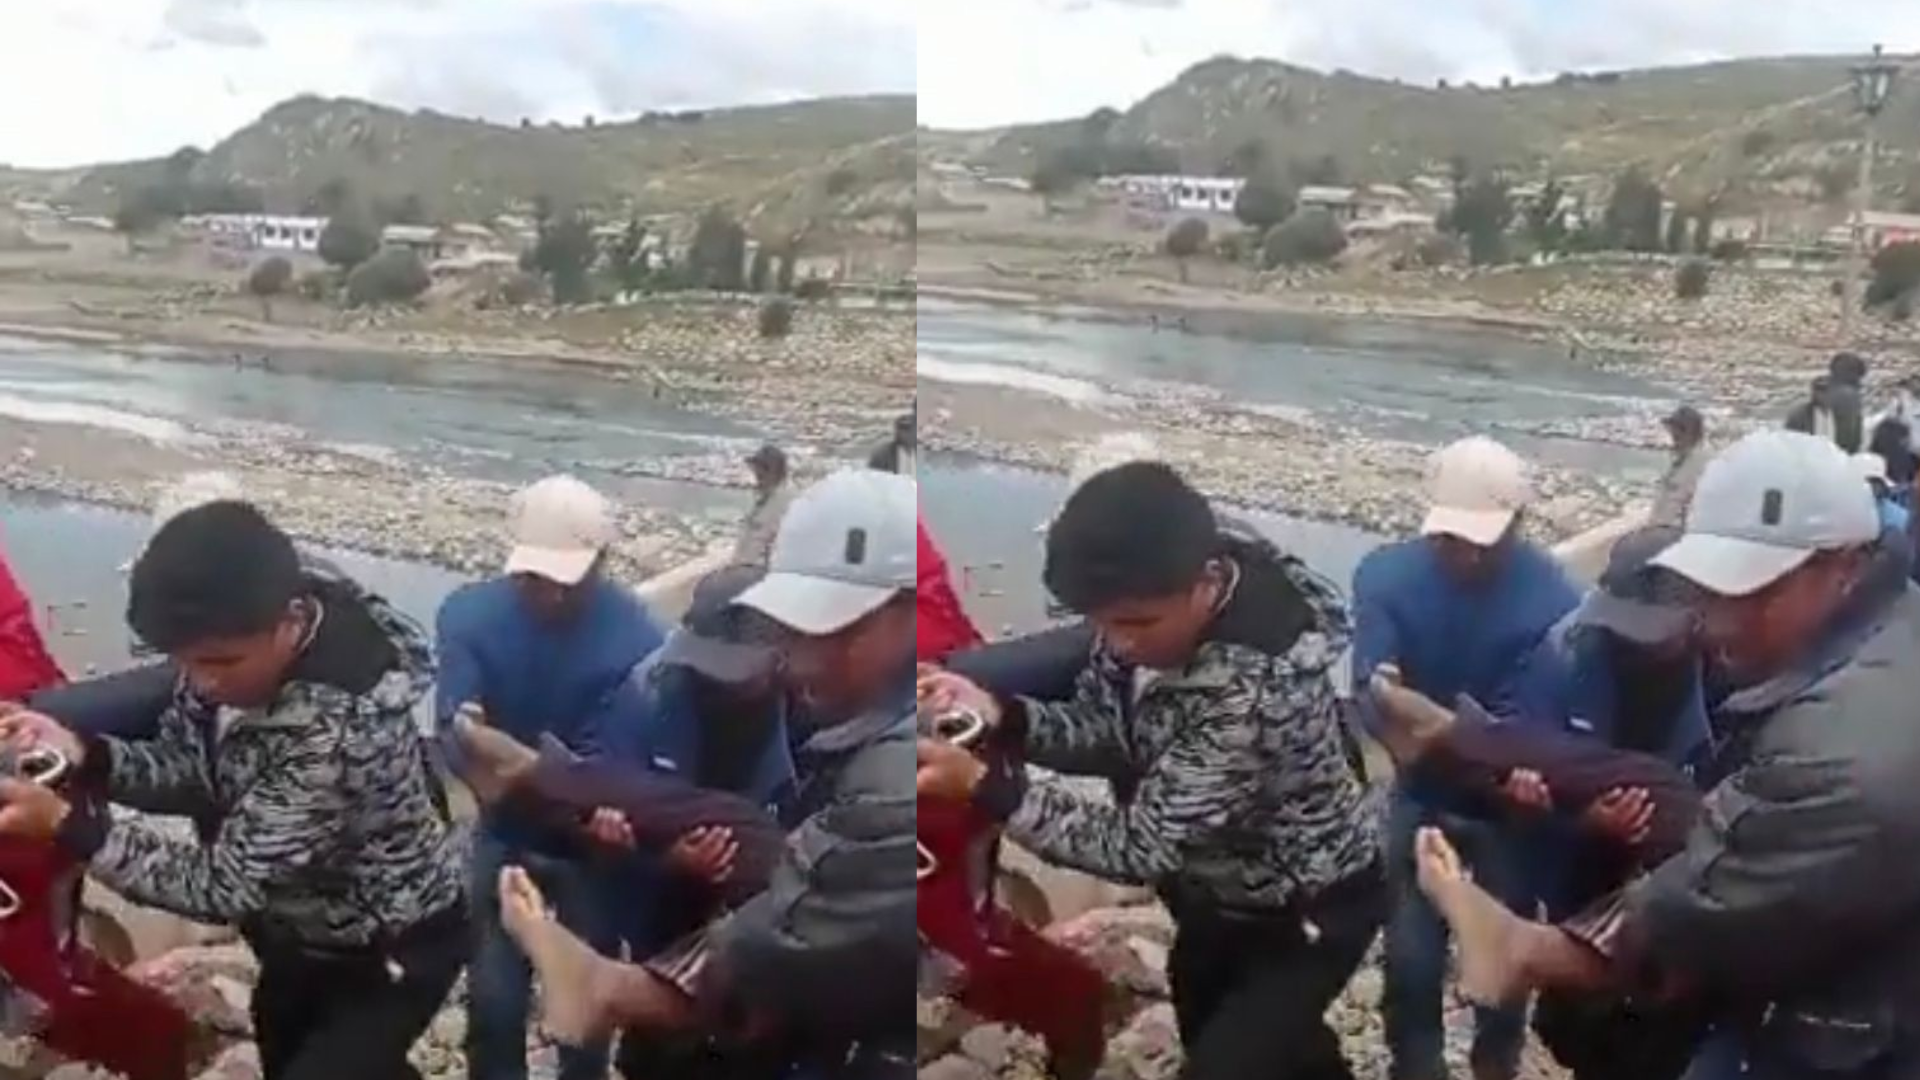 Soldado muere ahogado tras intentar cruzar el río Ilave por orden de sus superiores en Puno.
Foto: Twitter